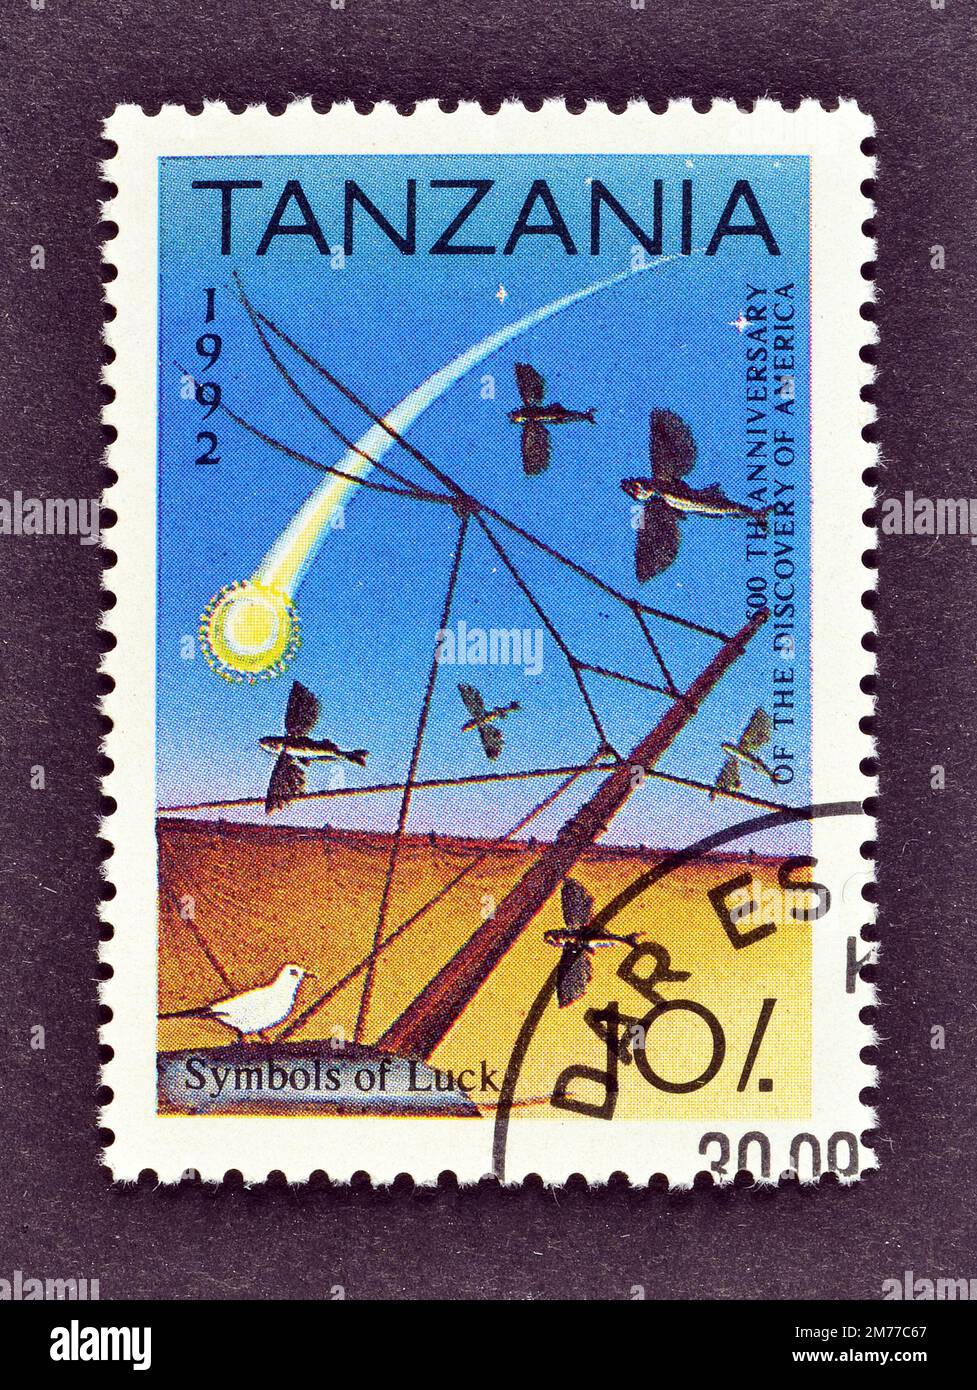 Stornierte Briefmarke gedruckt von Tansania, die Symbols of Luck zeigt, 500. Jubiläum Amerika zu entdecken, um 1992. Stockfoto